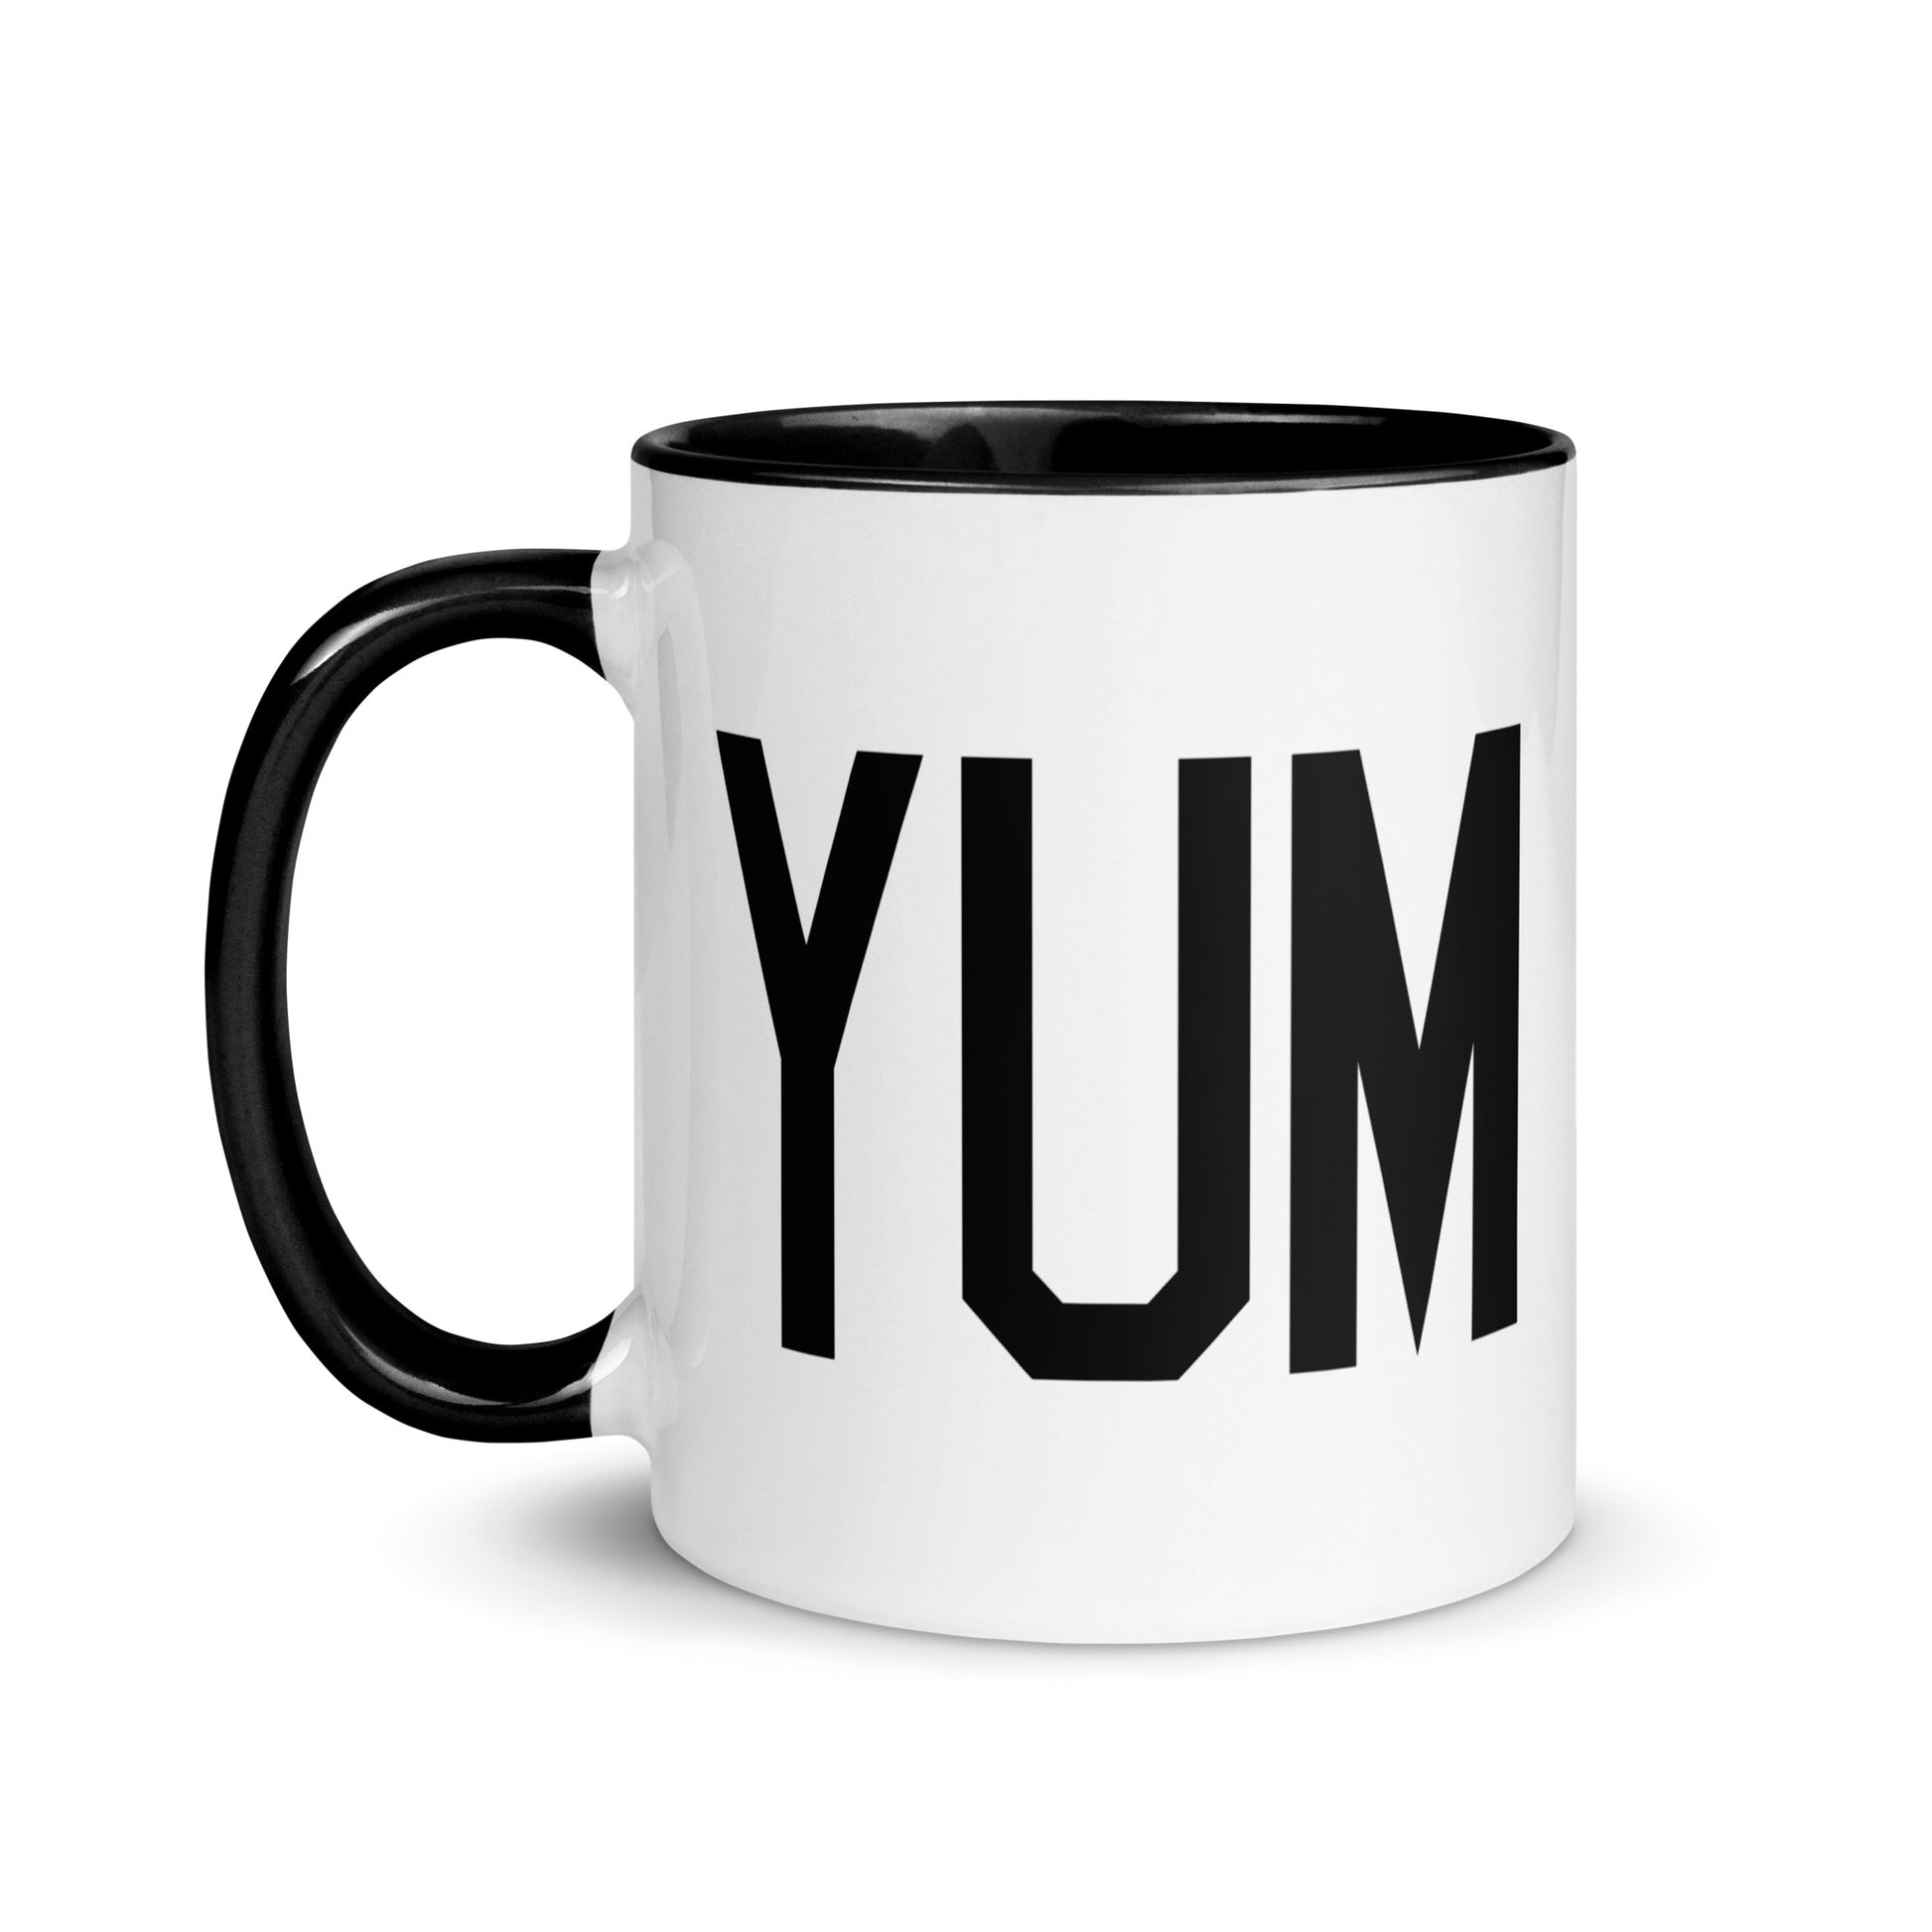 Airport Code Coffee Mug - Black • YUM Yuma • YHM Designs - Image 03